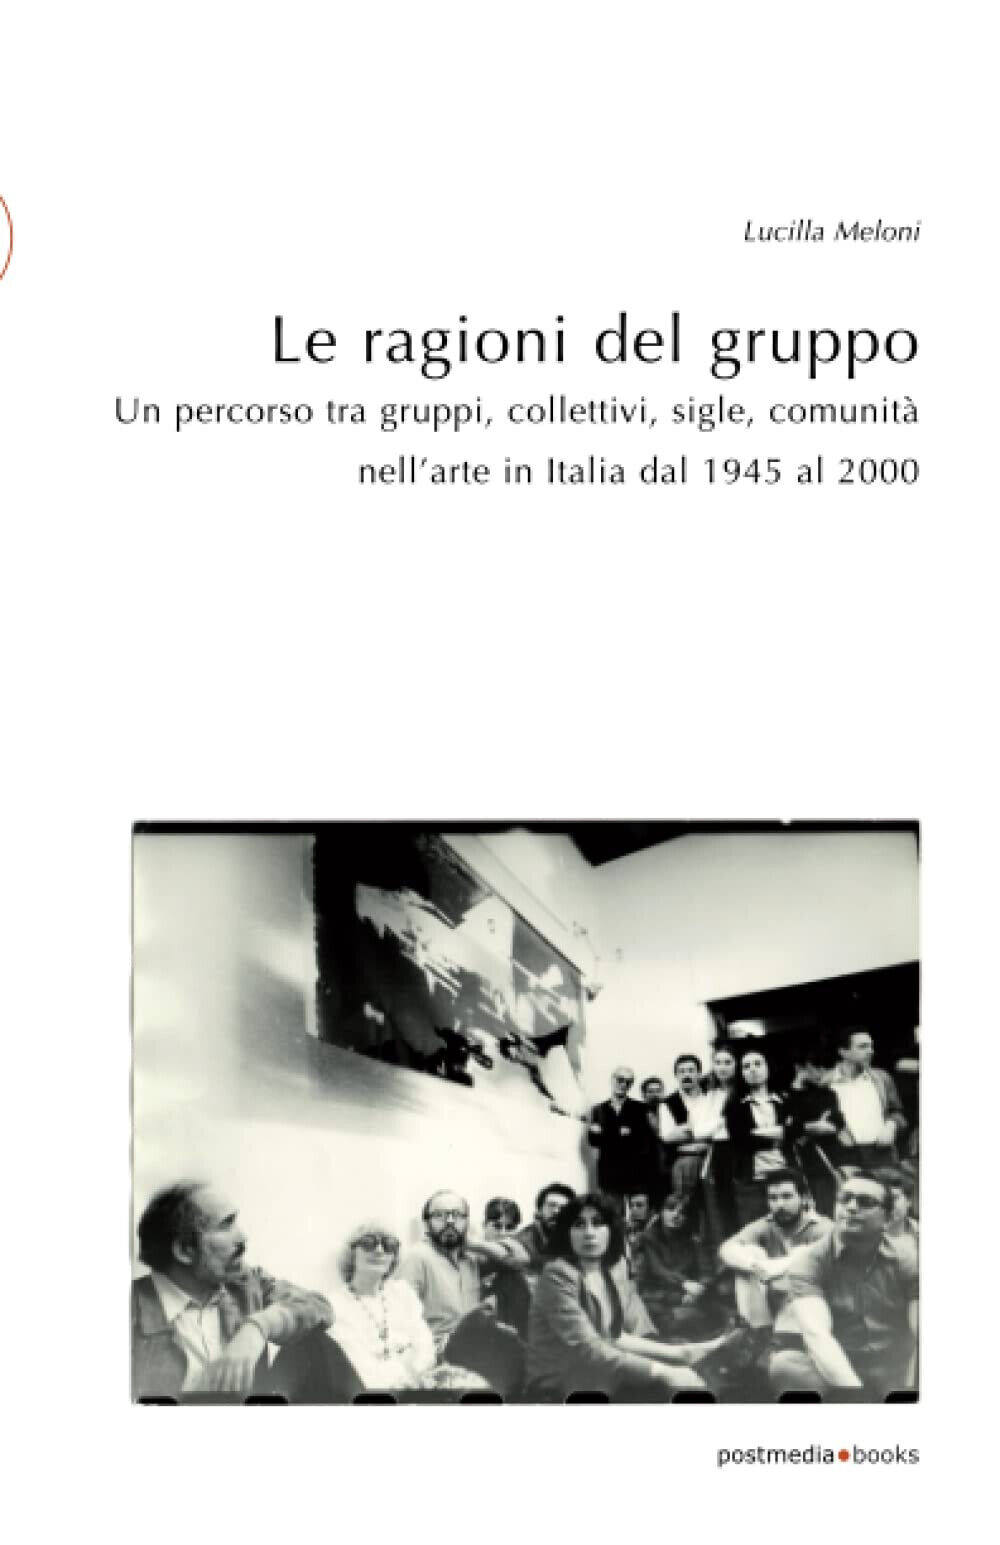 Le ragioni del gruppo - Lucilla Meloni - Postmedia Books, 2020